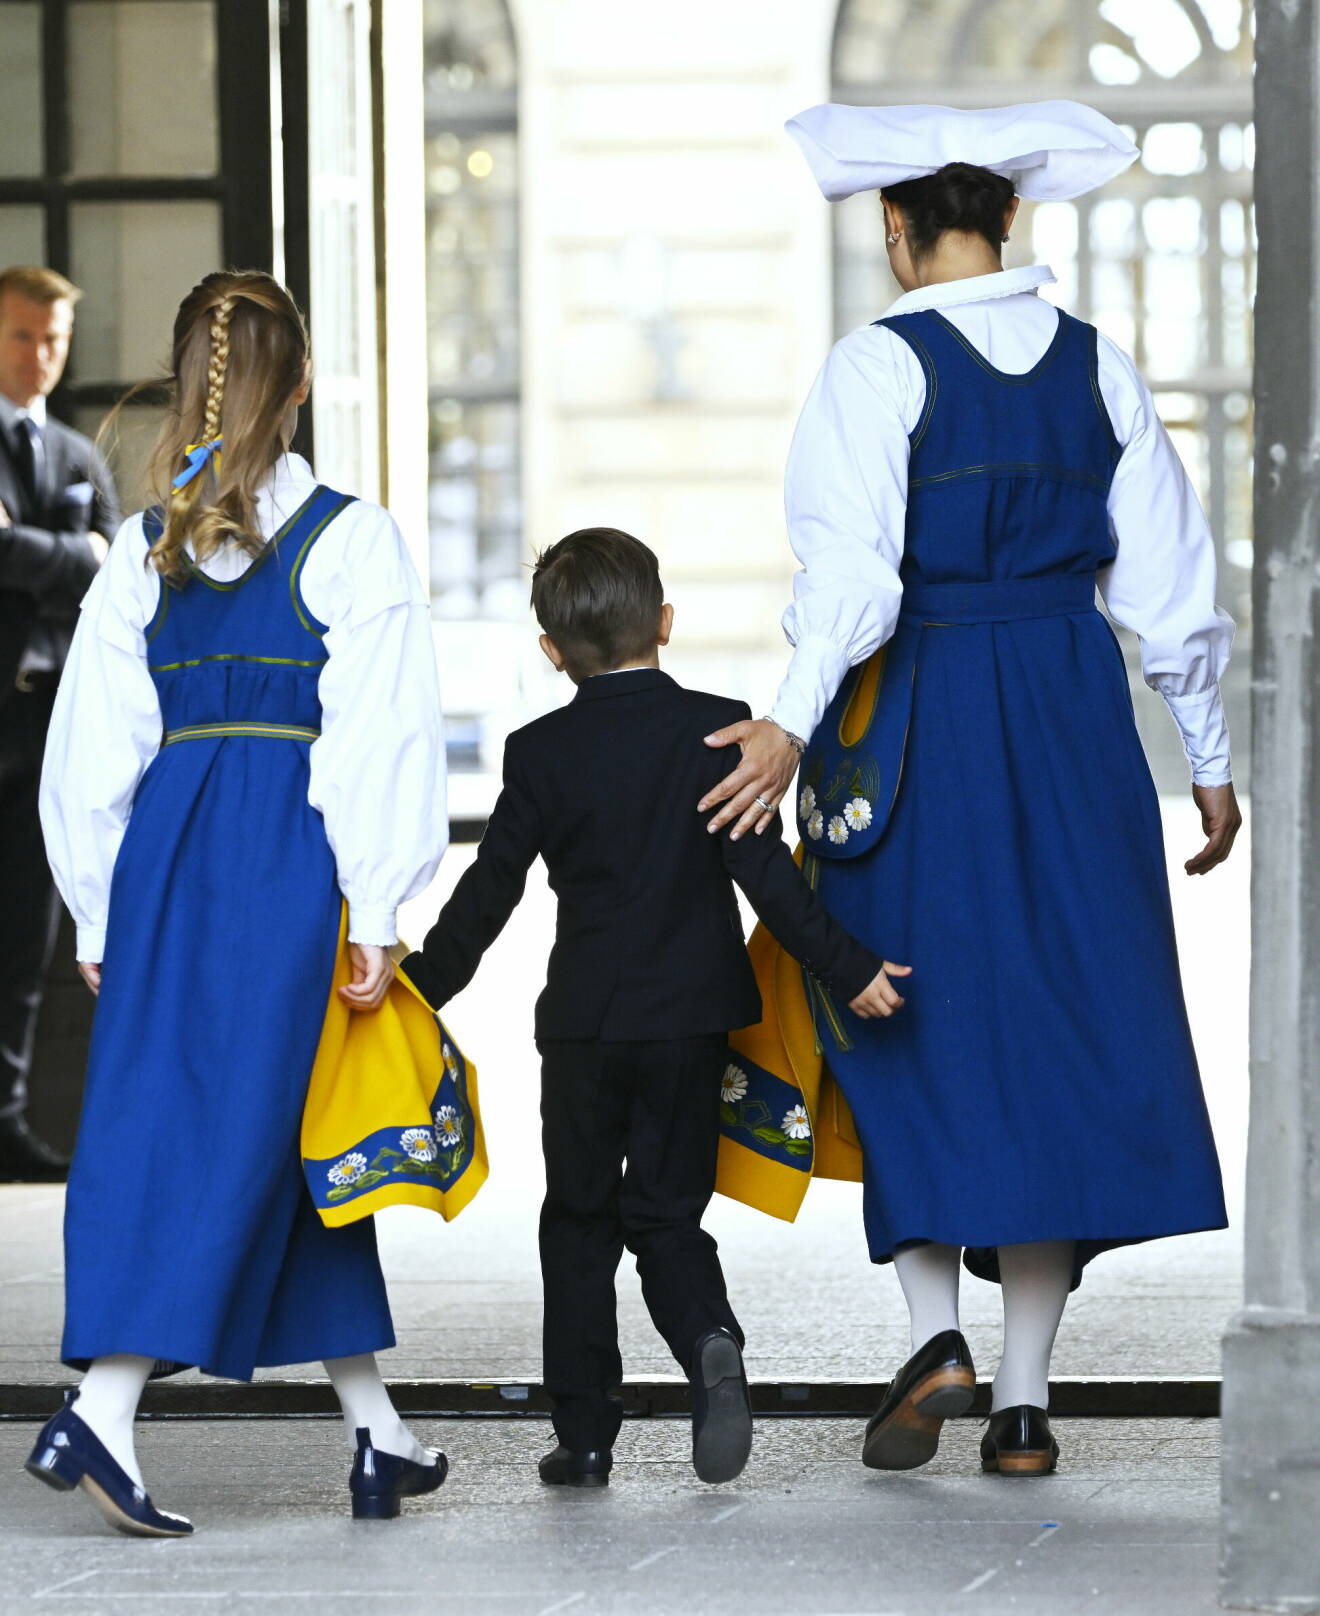 Nationaldagen 2023: Kronprinsessan Victoria och prinsessan Estelle i Sverigedräkt, prins Oscar i kostym